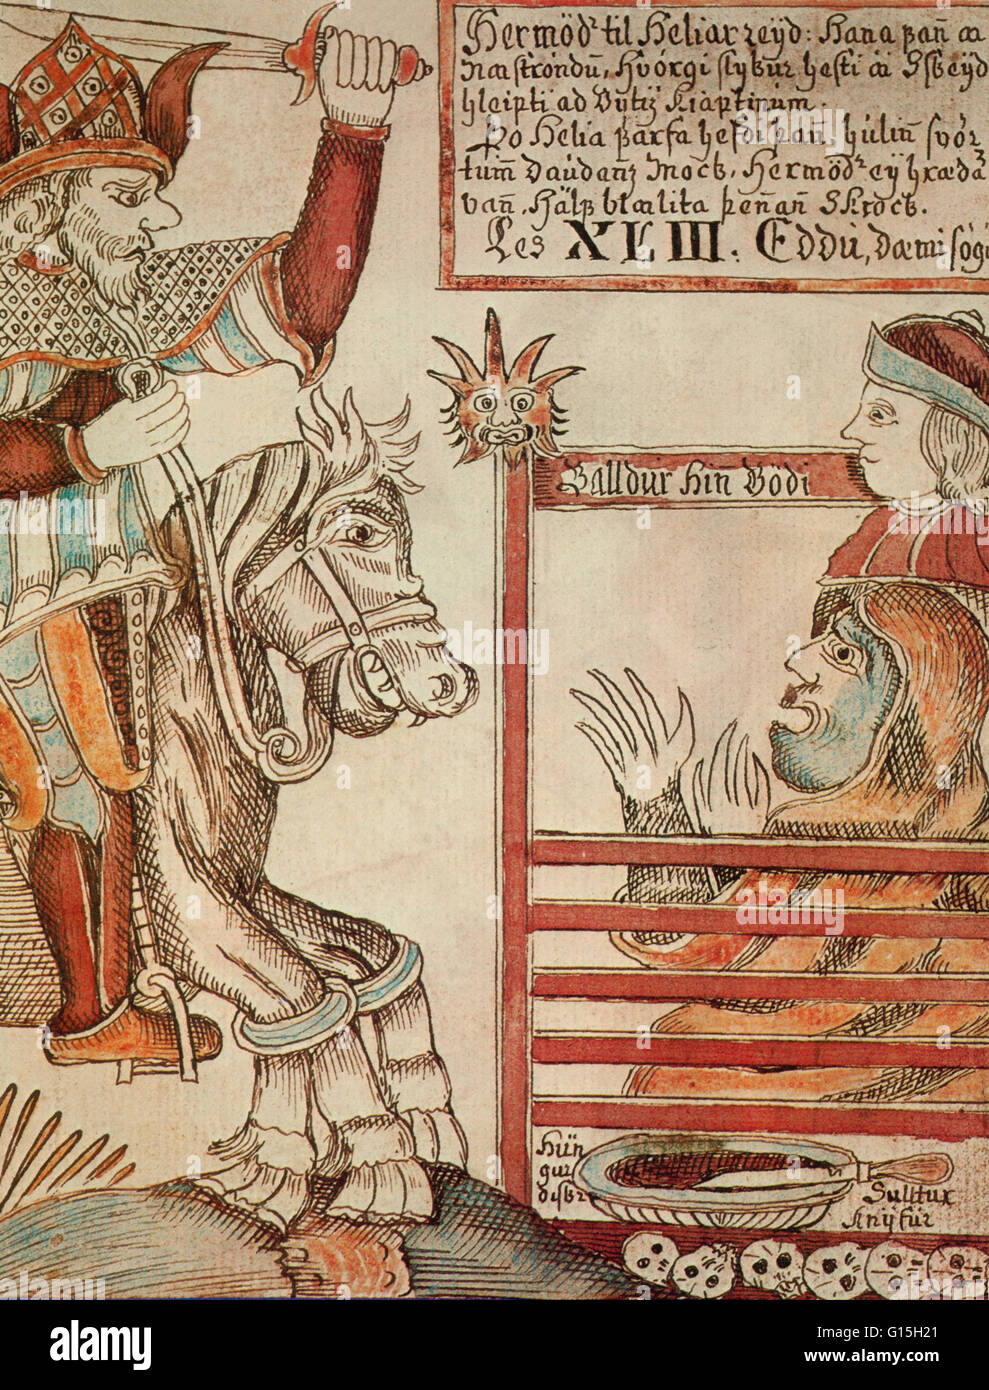 Una illustrazione il dio norvegese Hermod equitazione per recuperare il dio Baldr da Hel (inferi), a partire dal XVIII secolo manoscritto islandese. Foto Stock